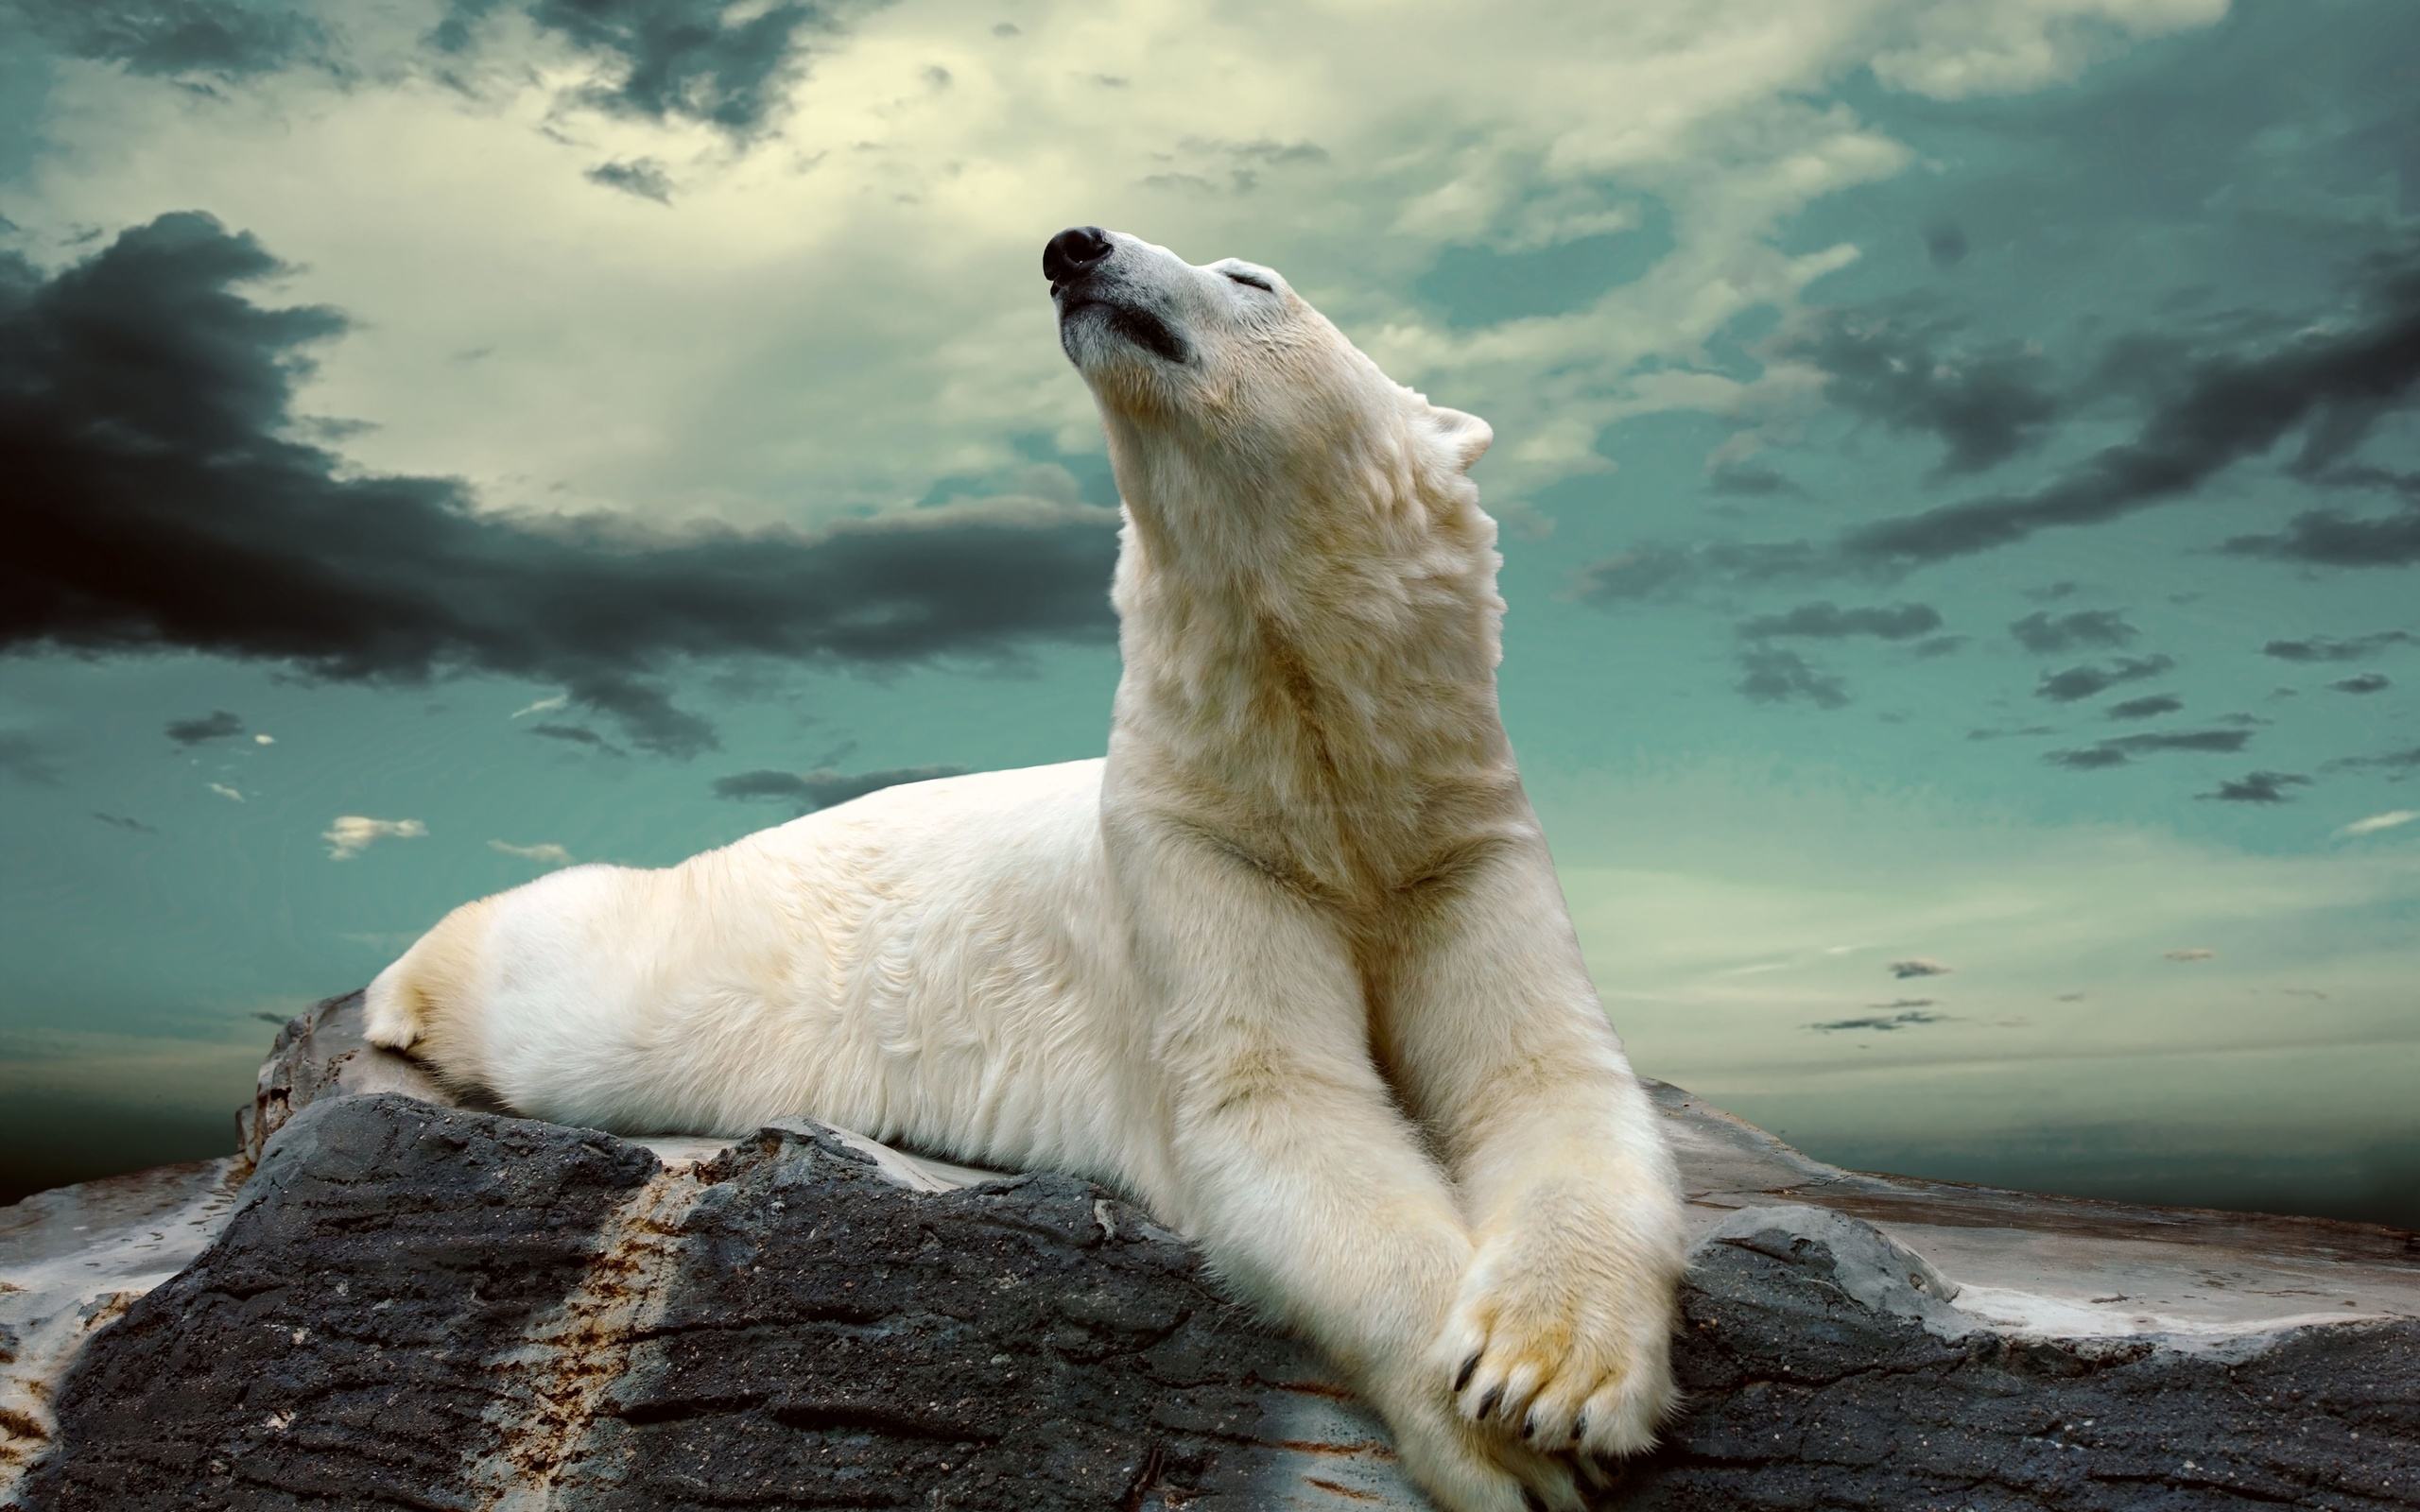 Nếu bạn yêu thích những hình ảnh đẹp của gấu Bắc Cực, không thể bỏ qua một bức ảnh chụp giữa đại dương xanh thẳm, với đôi mắt to và bông tai đáng yêu của chú gấu Bắc Cực.